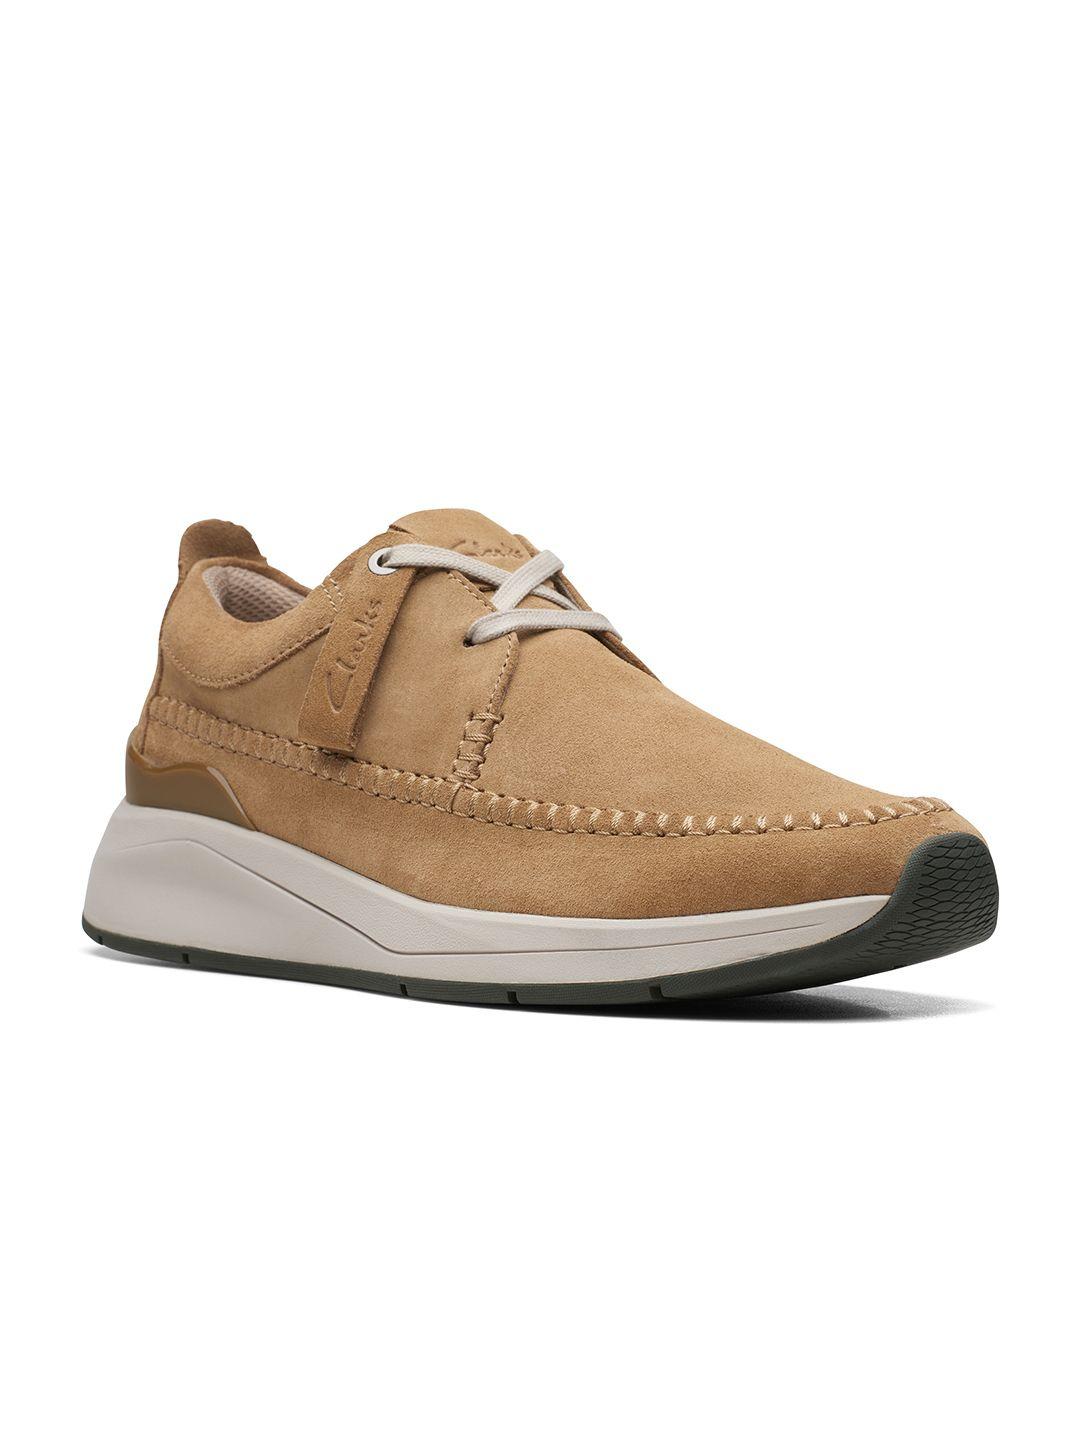 clarks-men-brown-suede-sneakers